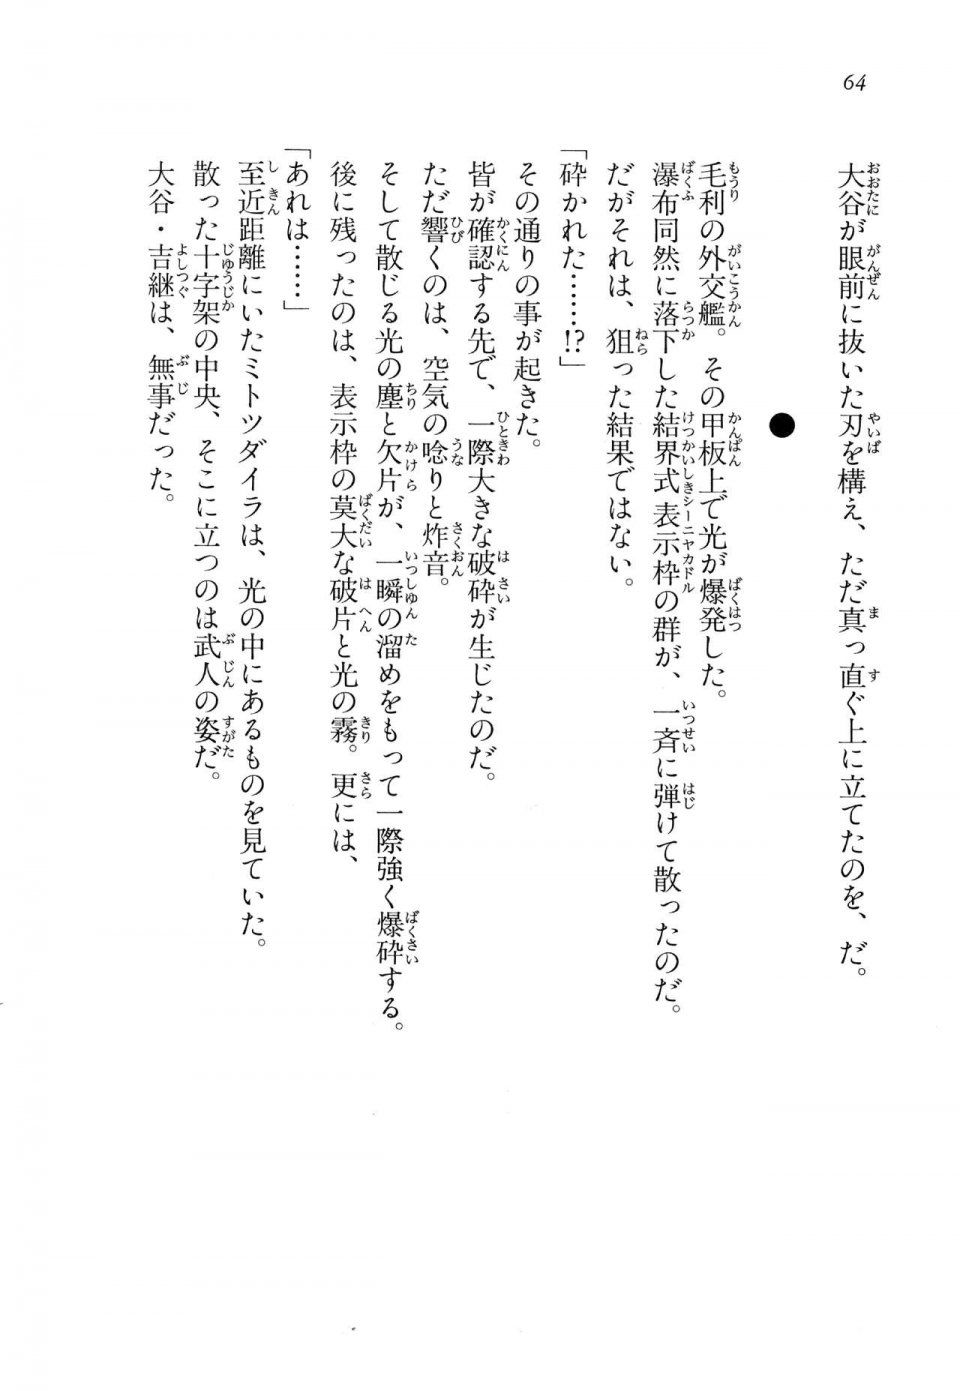 Kyoukai Senjou no Horizon LN Vol 14(6B) - Photo #64